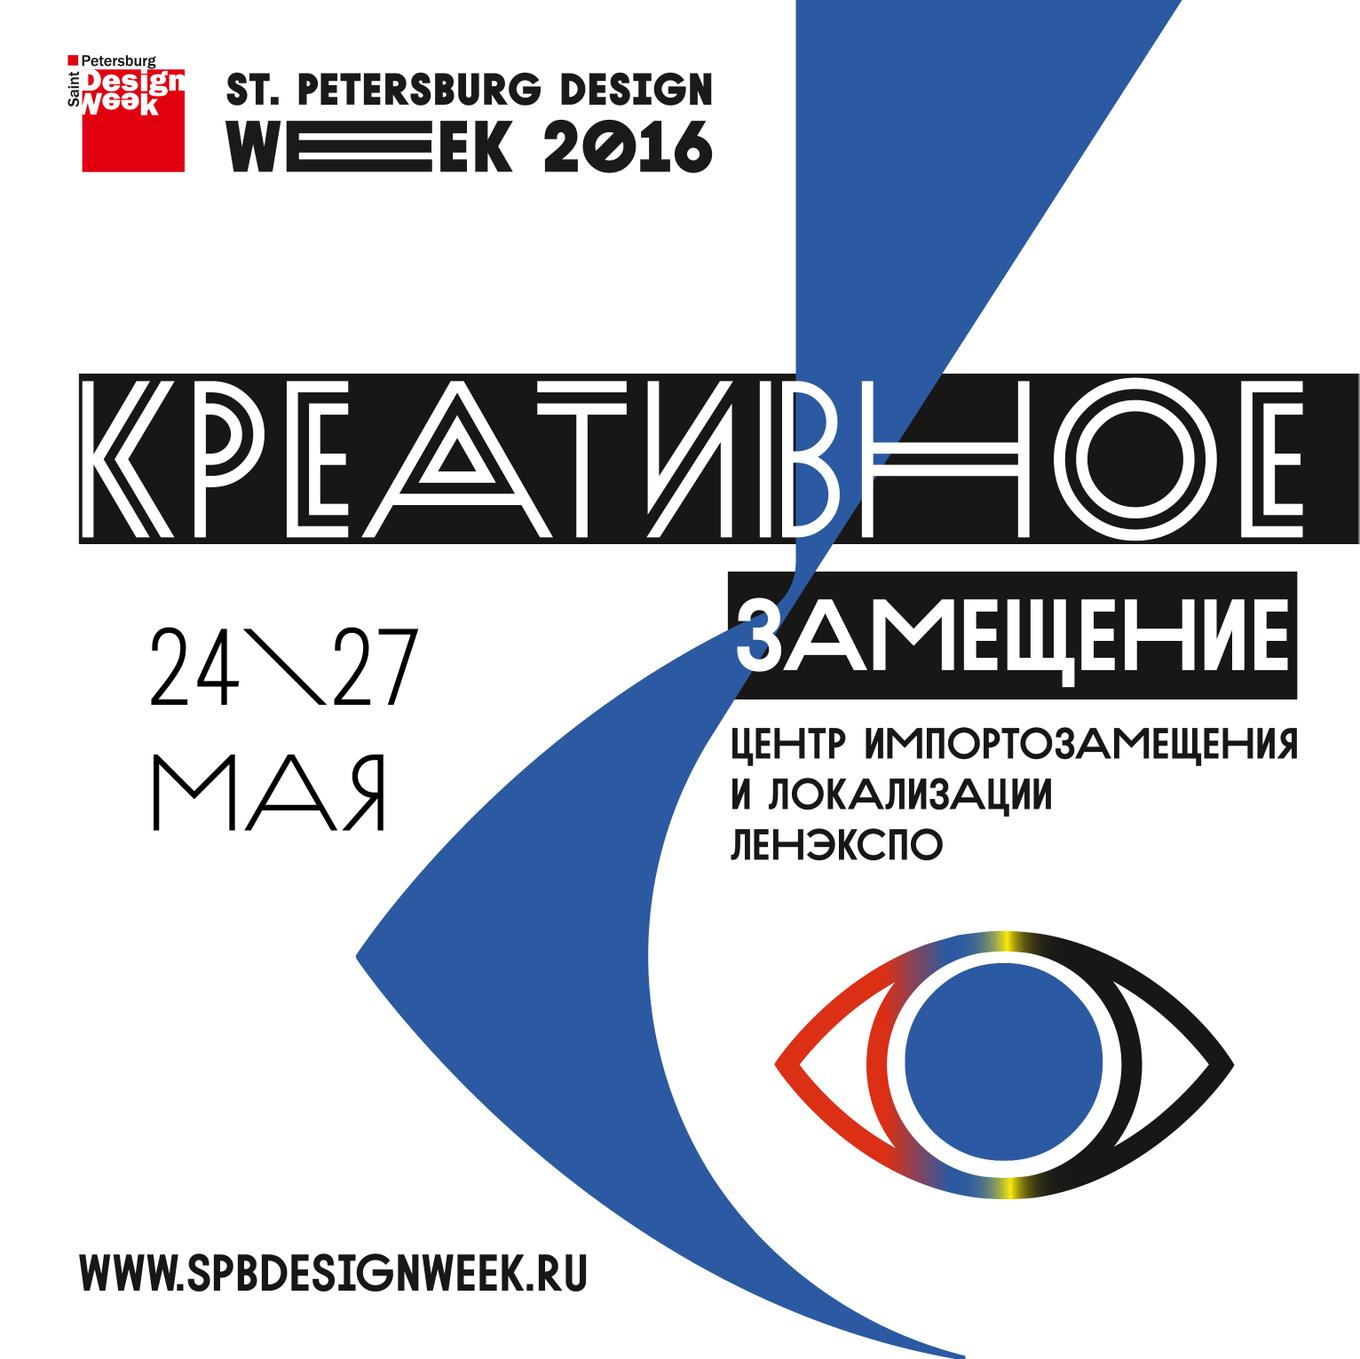 St. Petersburg Design Week 2016